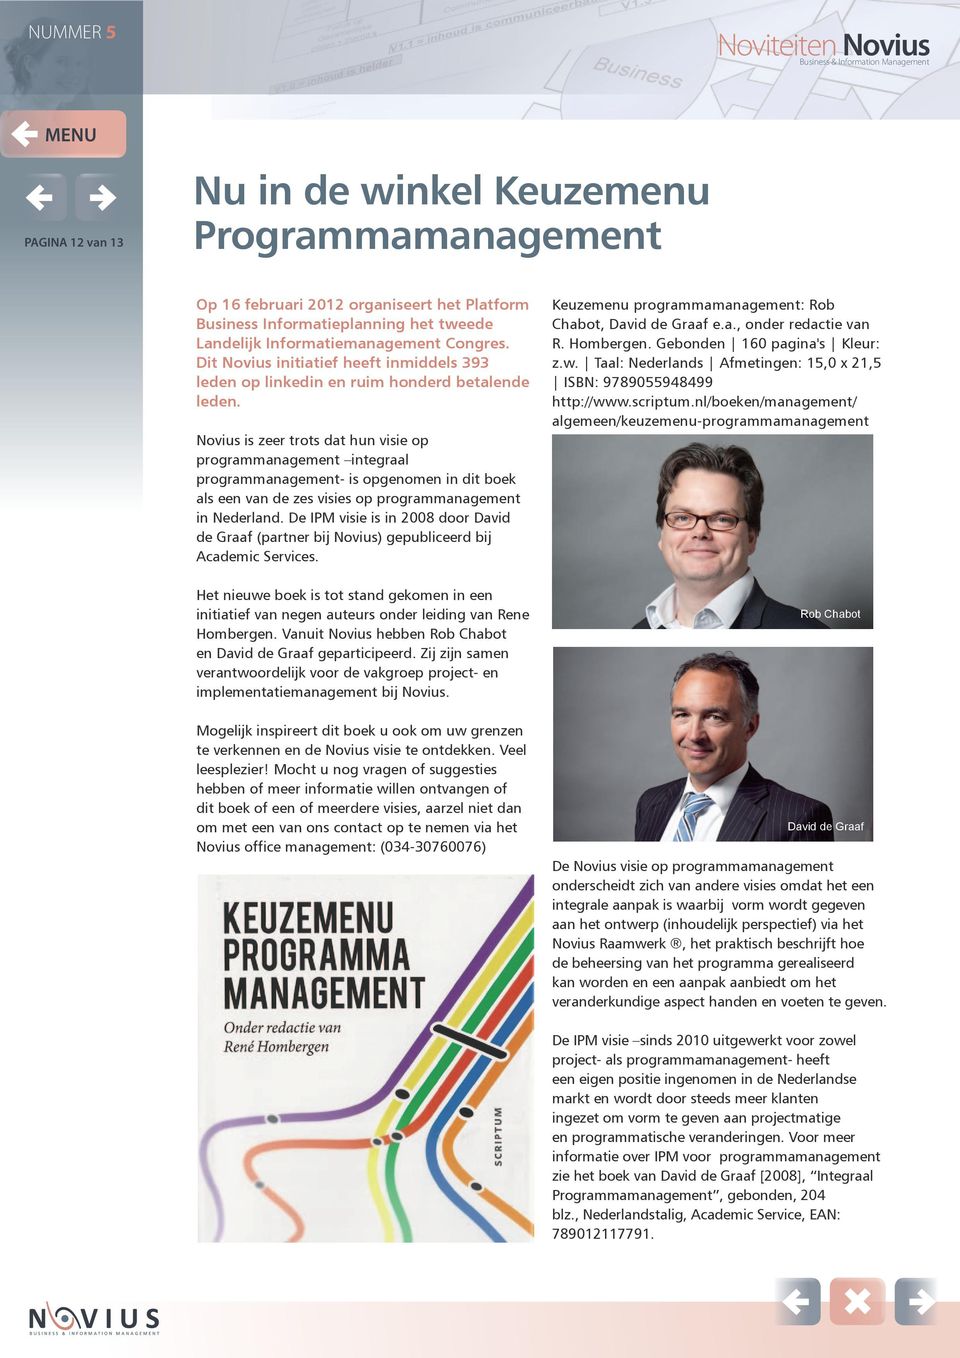 Novius is zeer trots dat hun visie op programmanagement integraal programmanagement- is opgenomen in dit boek als een van de zes visies op programmanagement in Nederland.